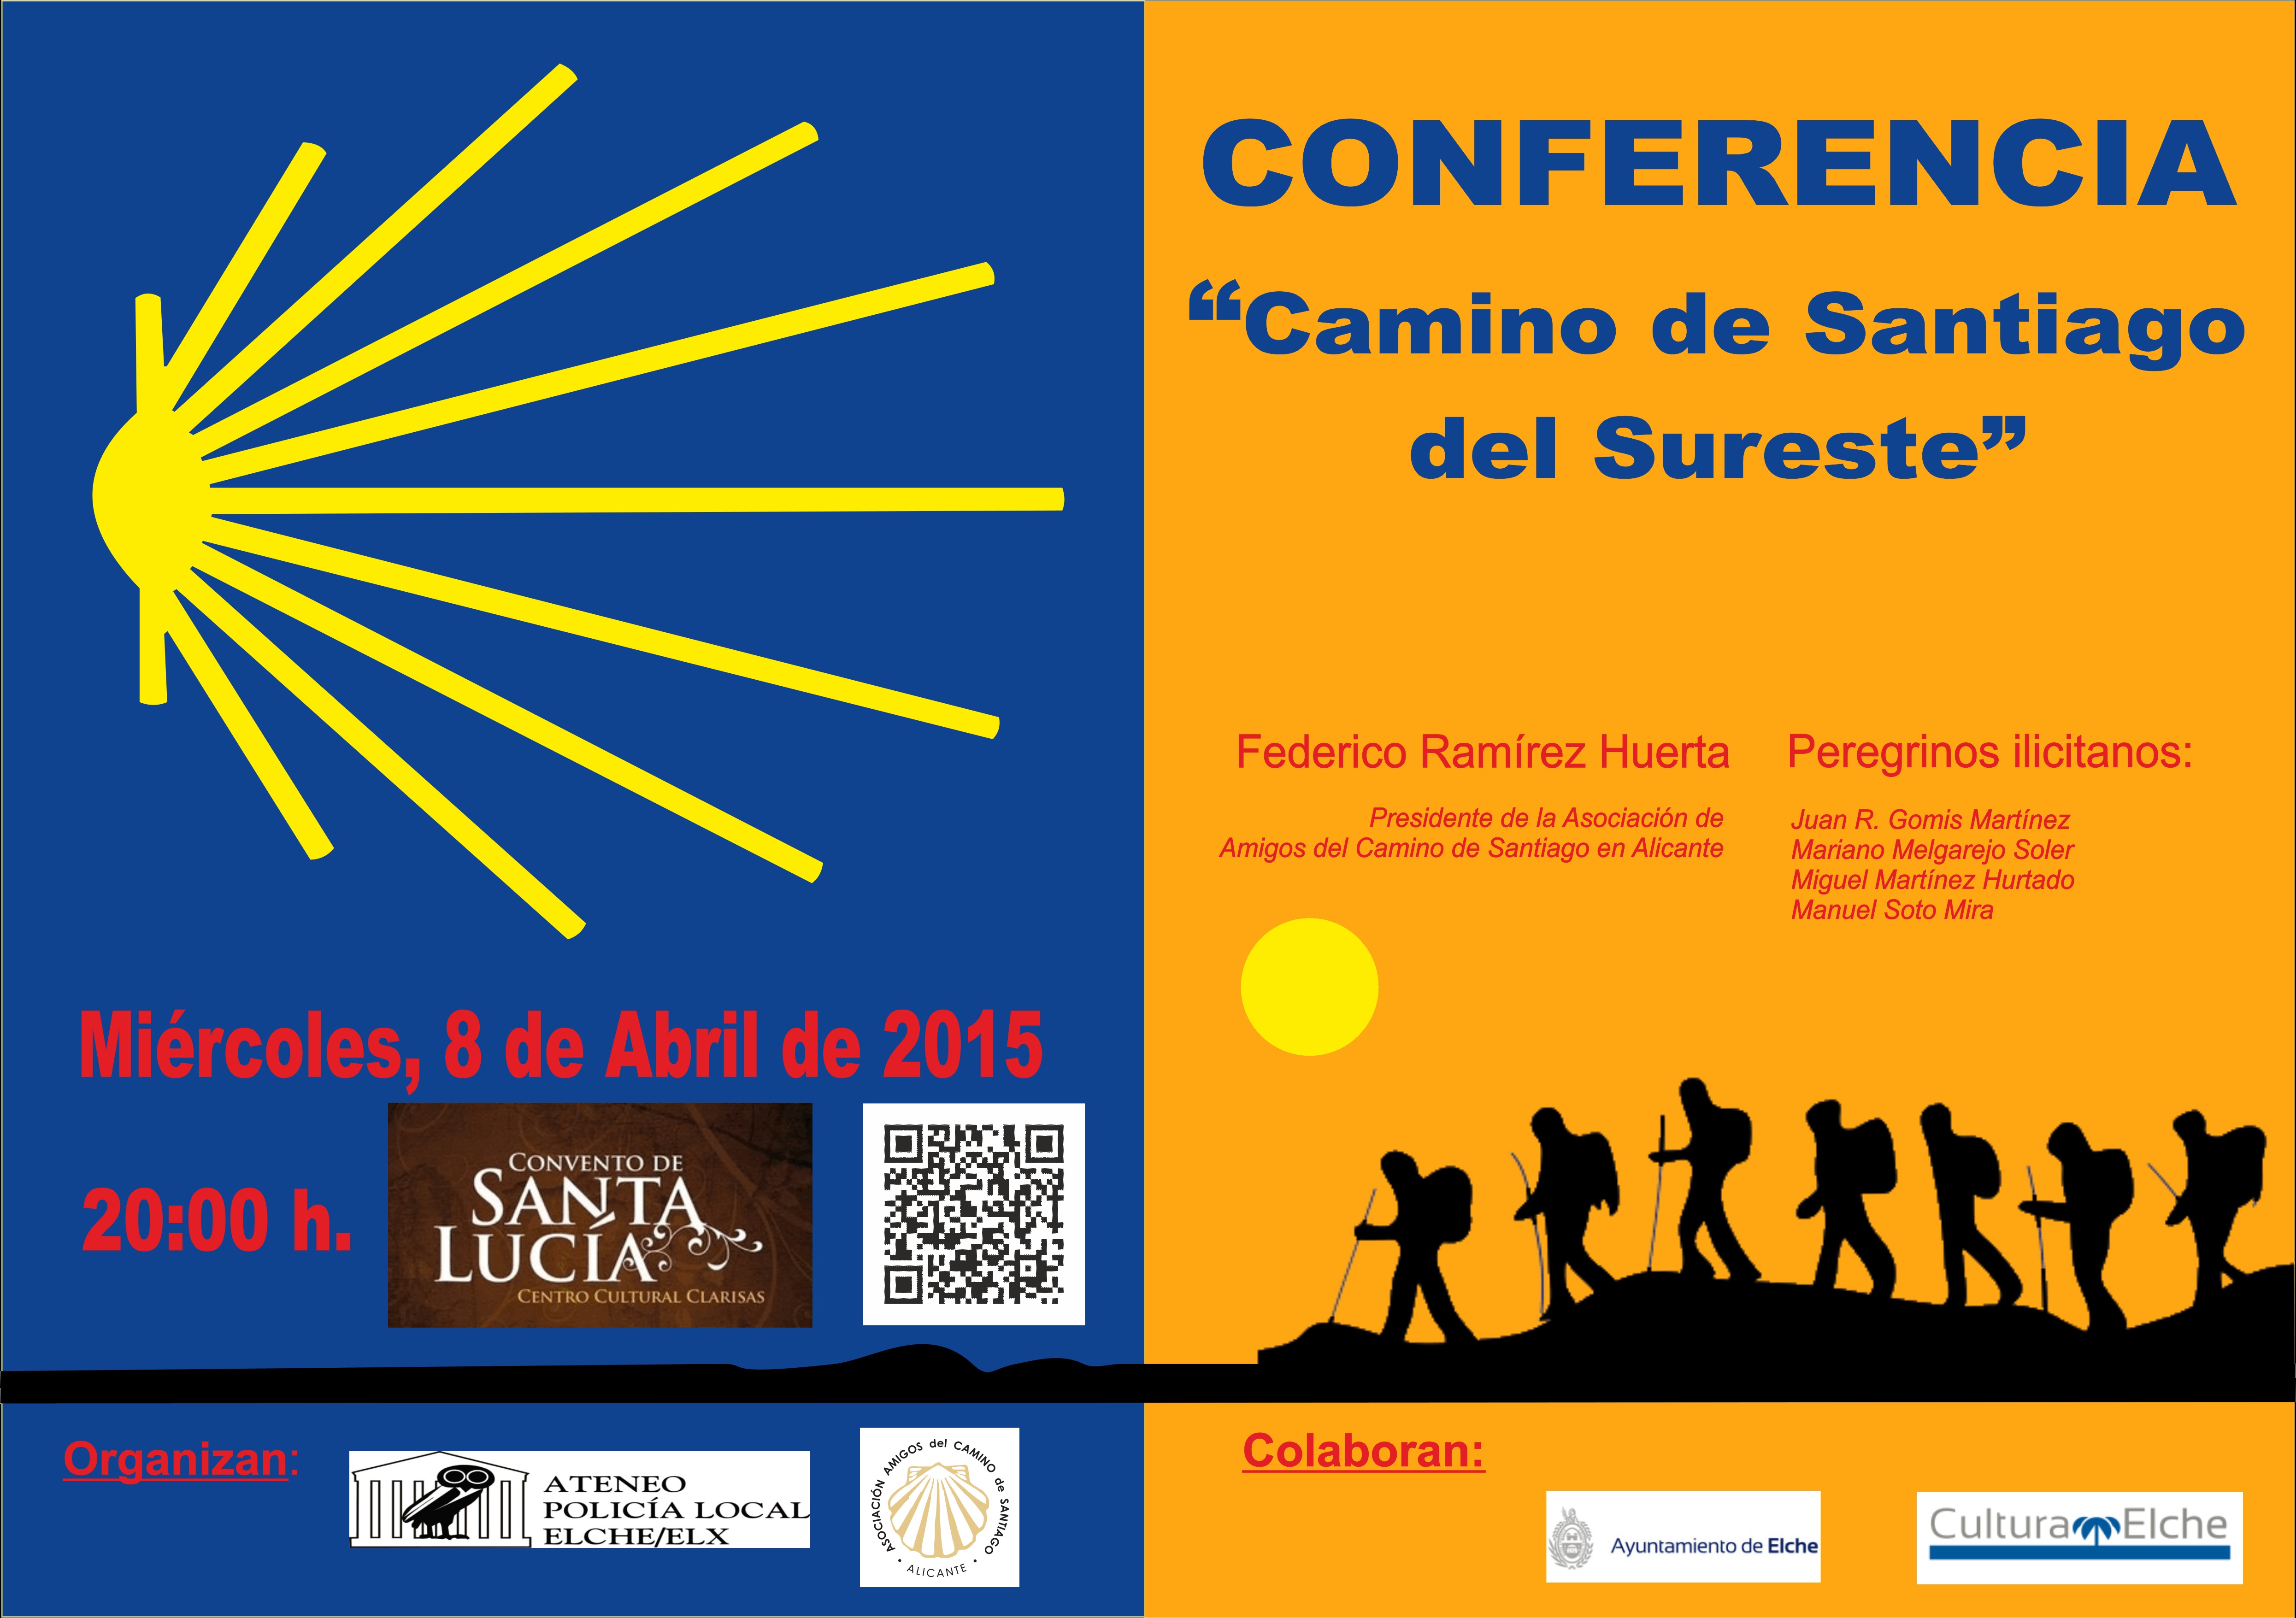 Cartel Conferencia Definitivo (mes abril y apellido corregido) CALIDAD MEDIA